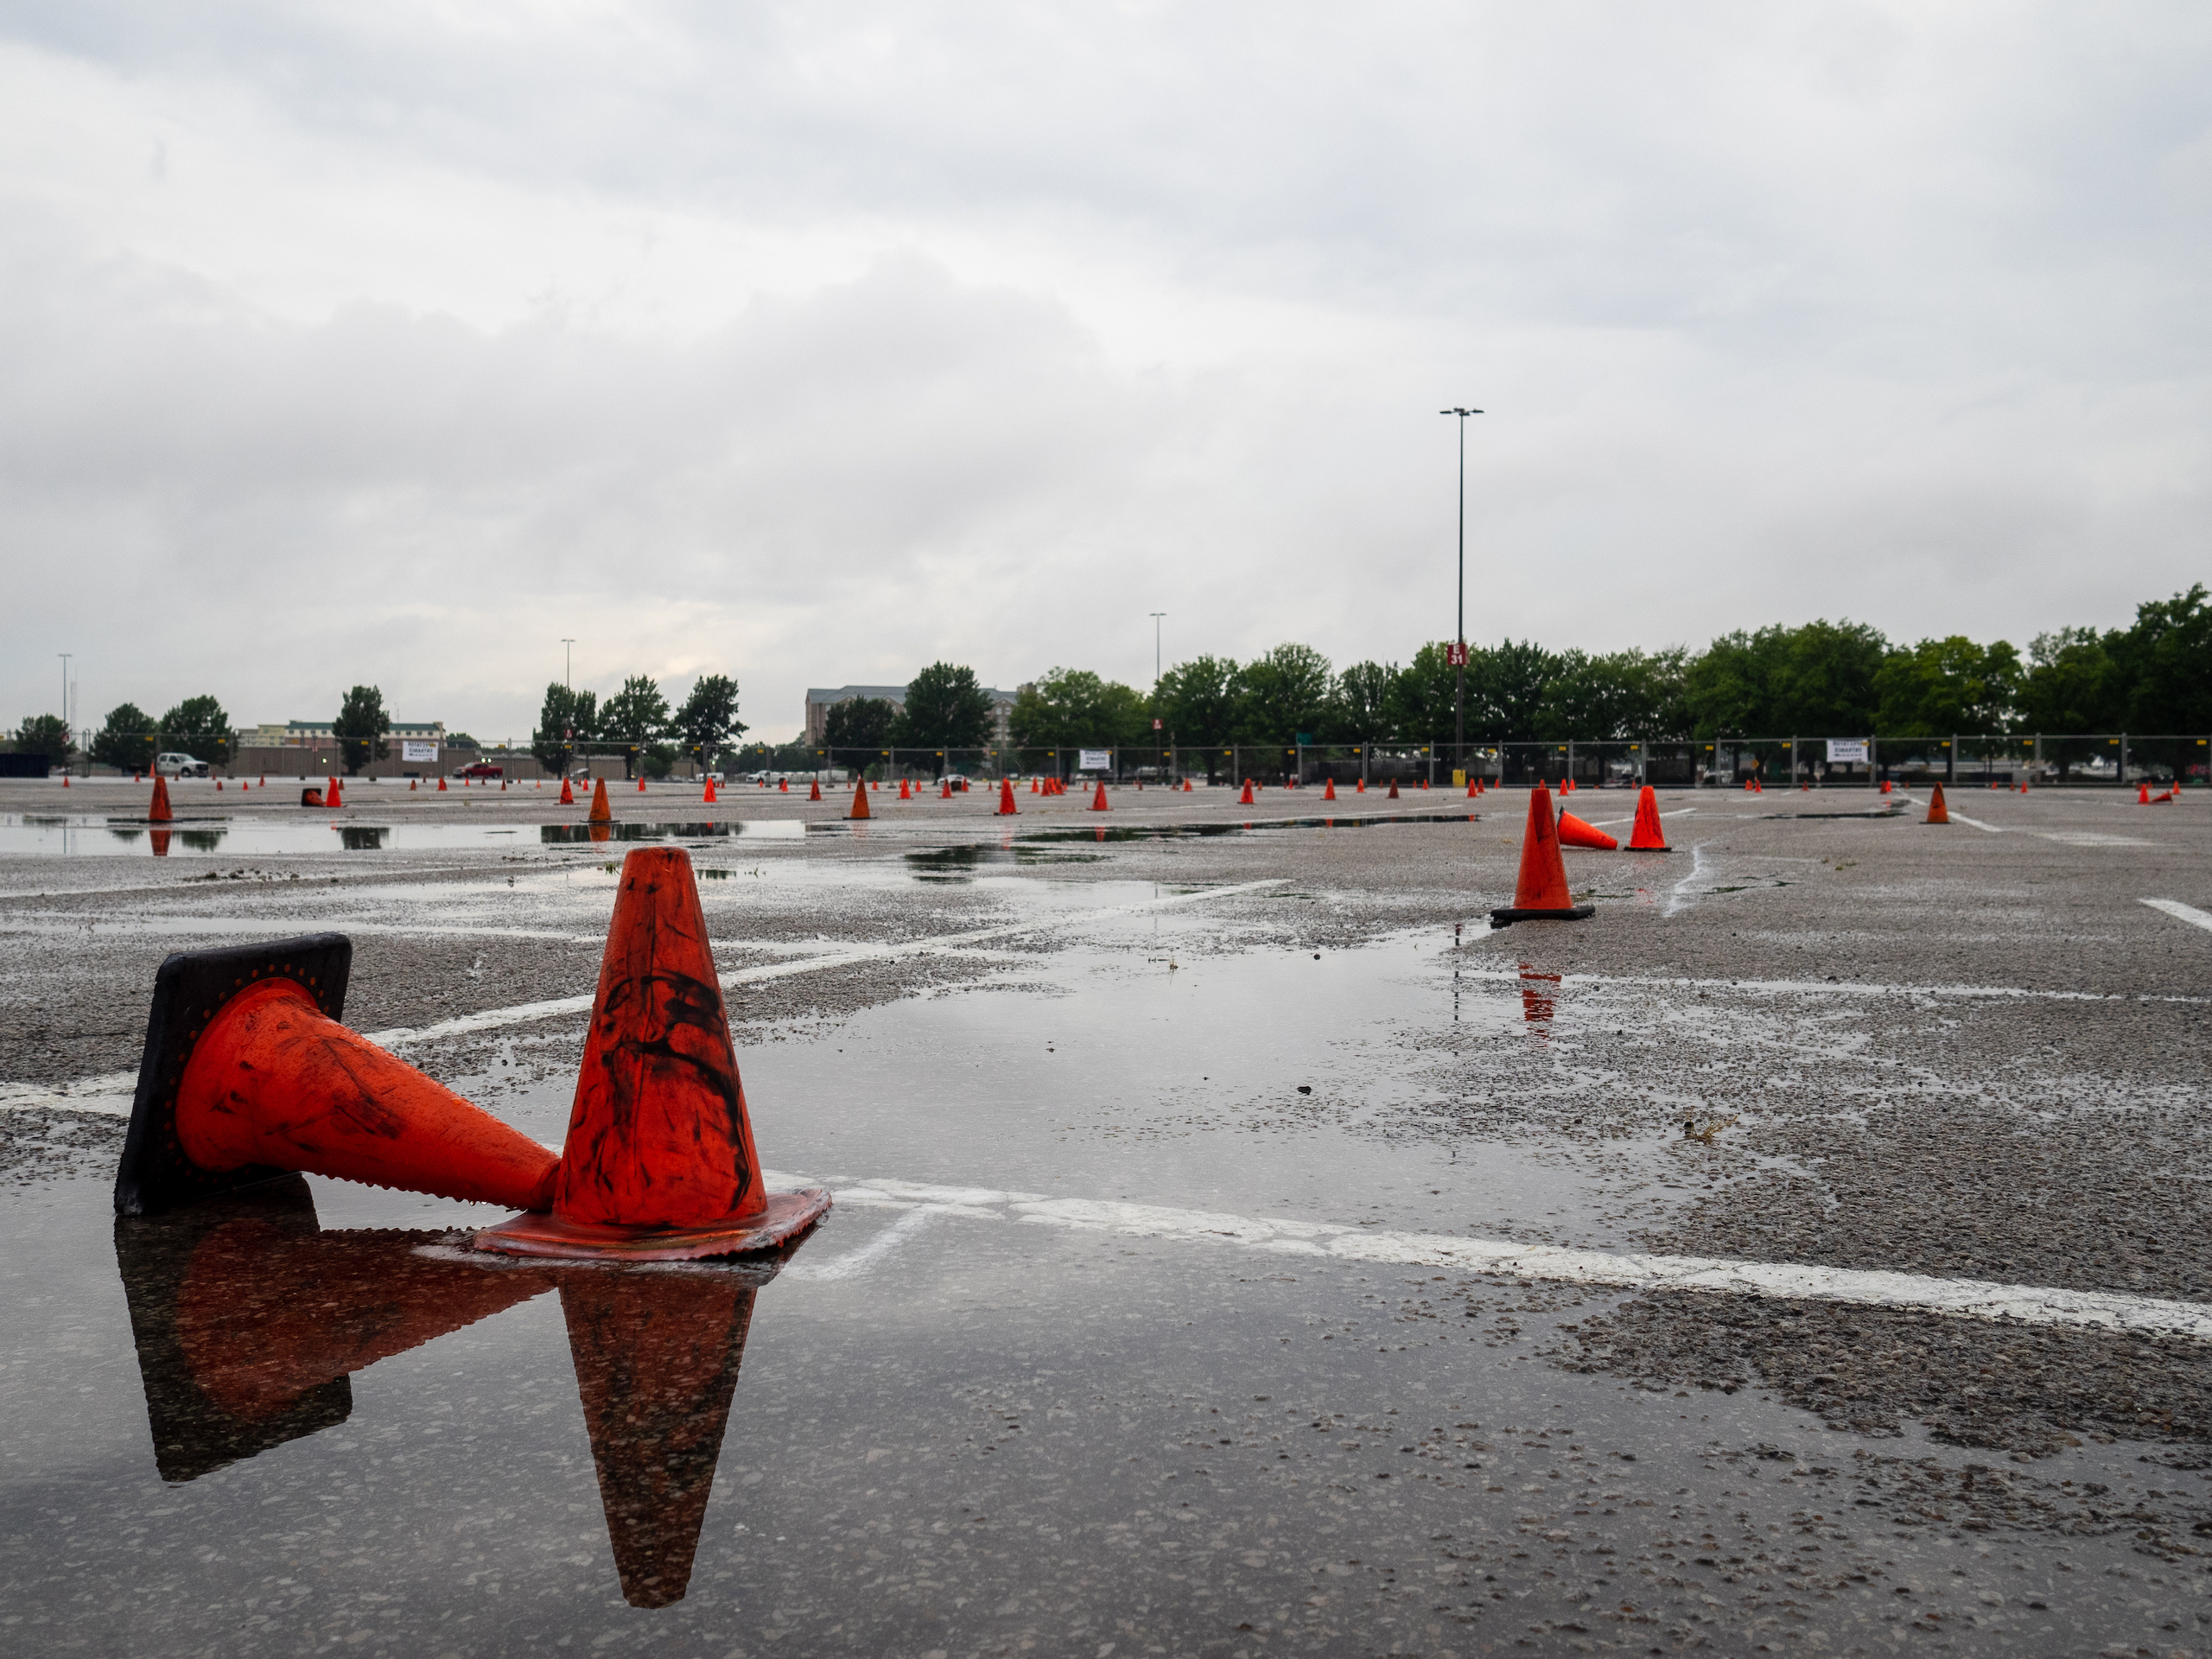 Autocross cones rain delay